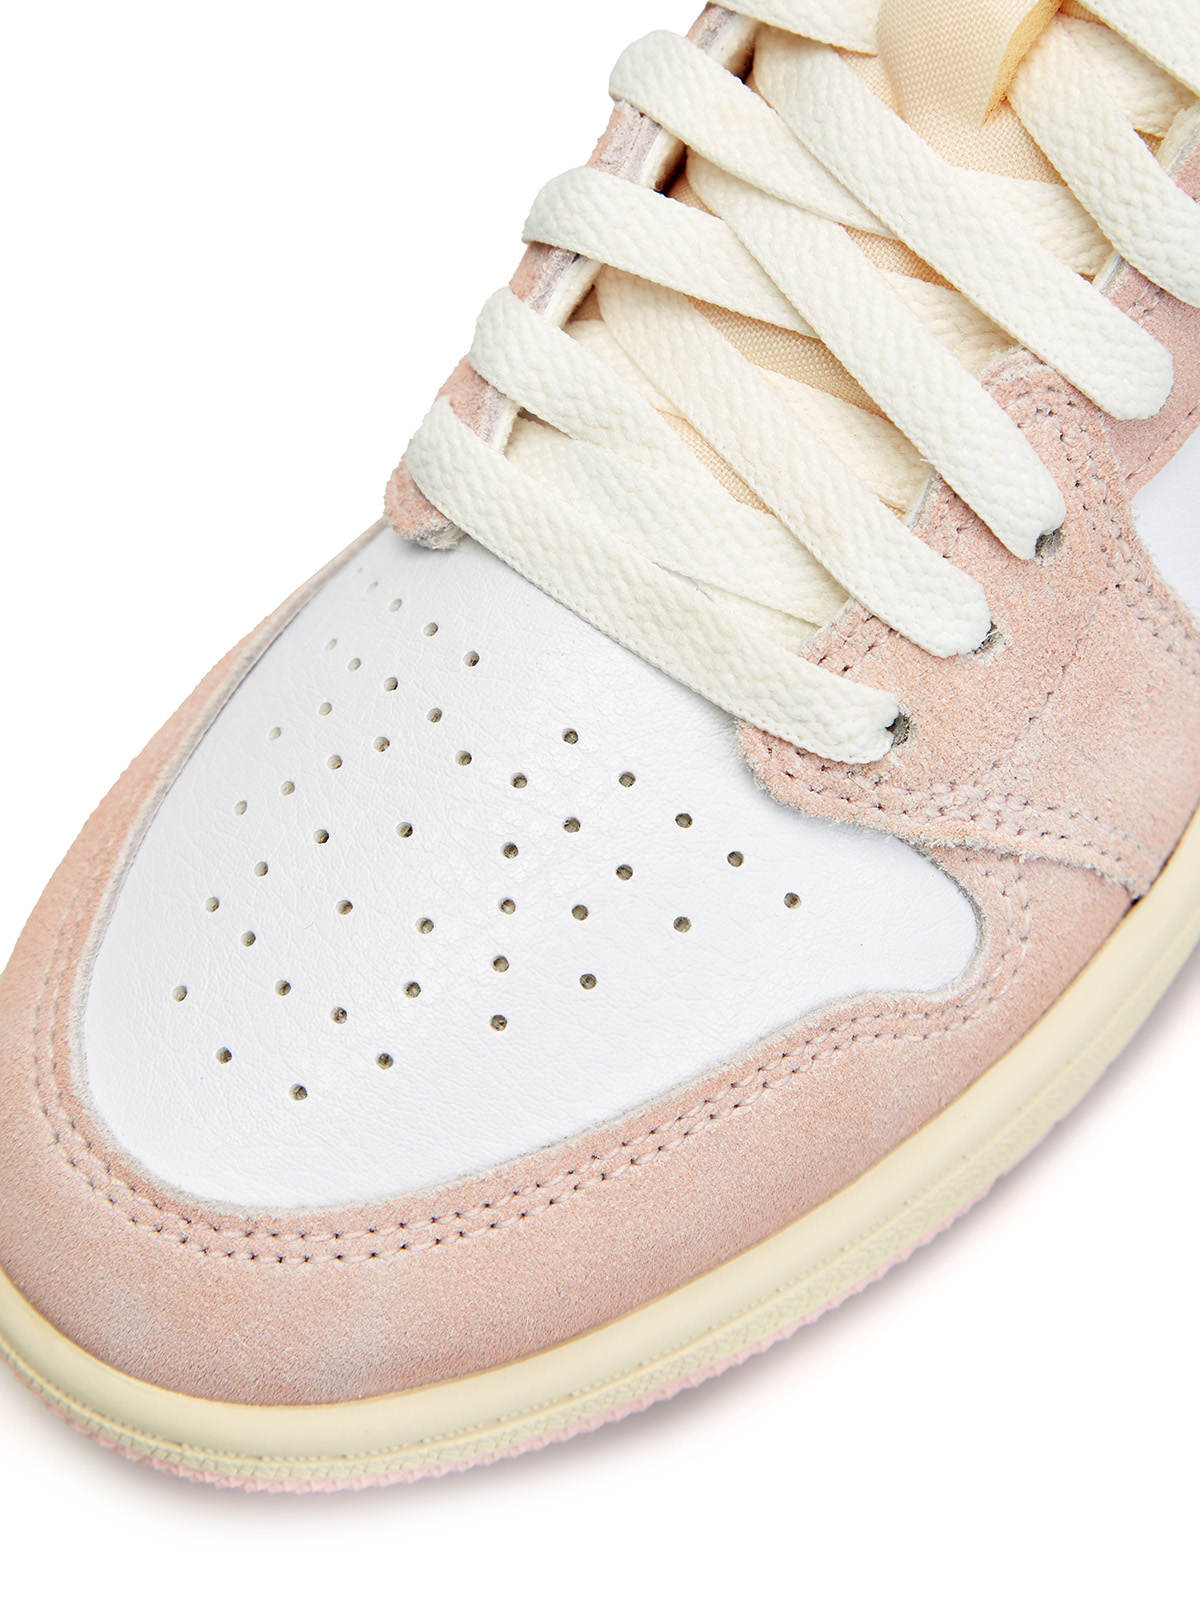 Кроссовки Jordan 1 Retro High OG 'Washed Pink' (PS) Jordan, цвет розовый Кроссовки Jordan 1 Retro High OG 'Washed Pink' (PS) - фото 6